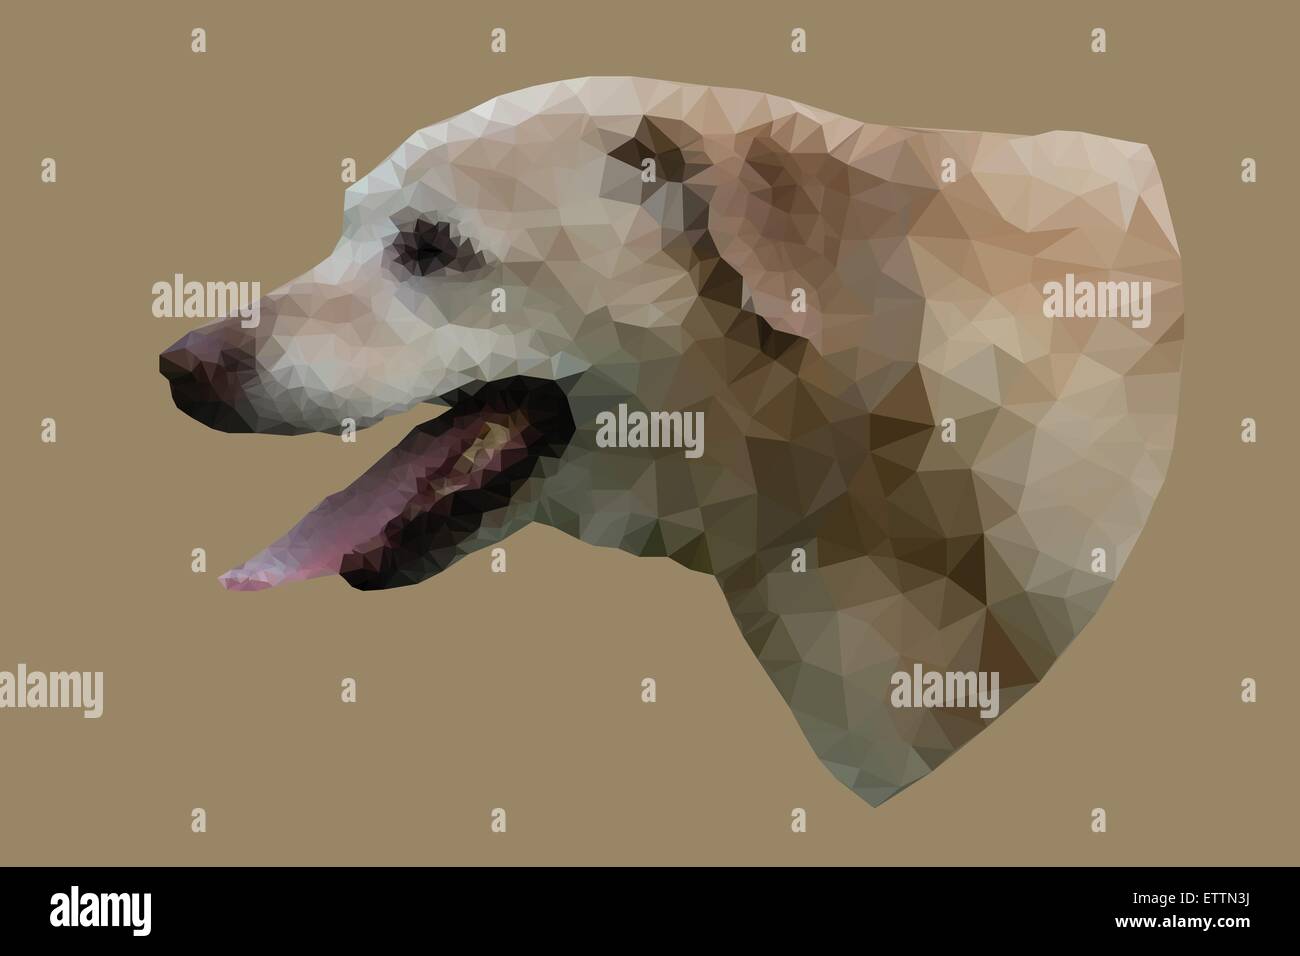 Low-Poly-Vektor-Porträt, Abbildung des Hundes mit offen Mund und schläfrigen Zunge. Stock Vektor